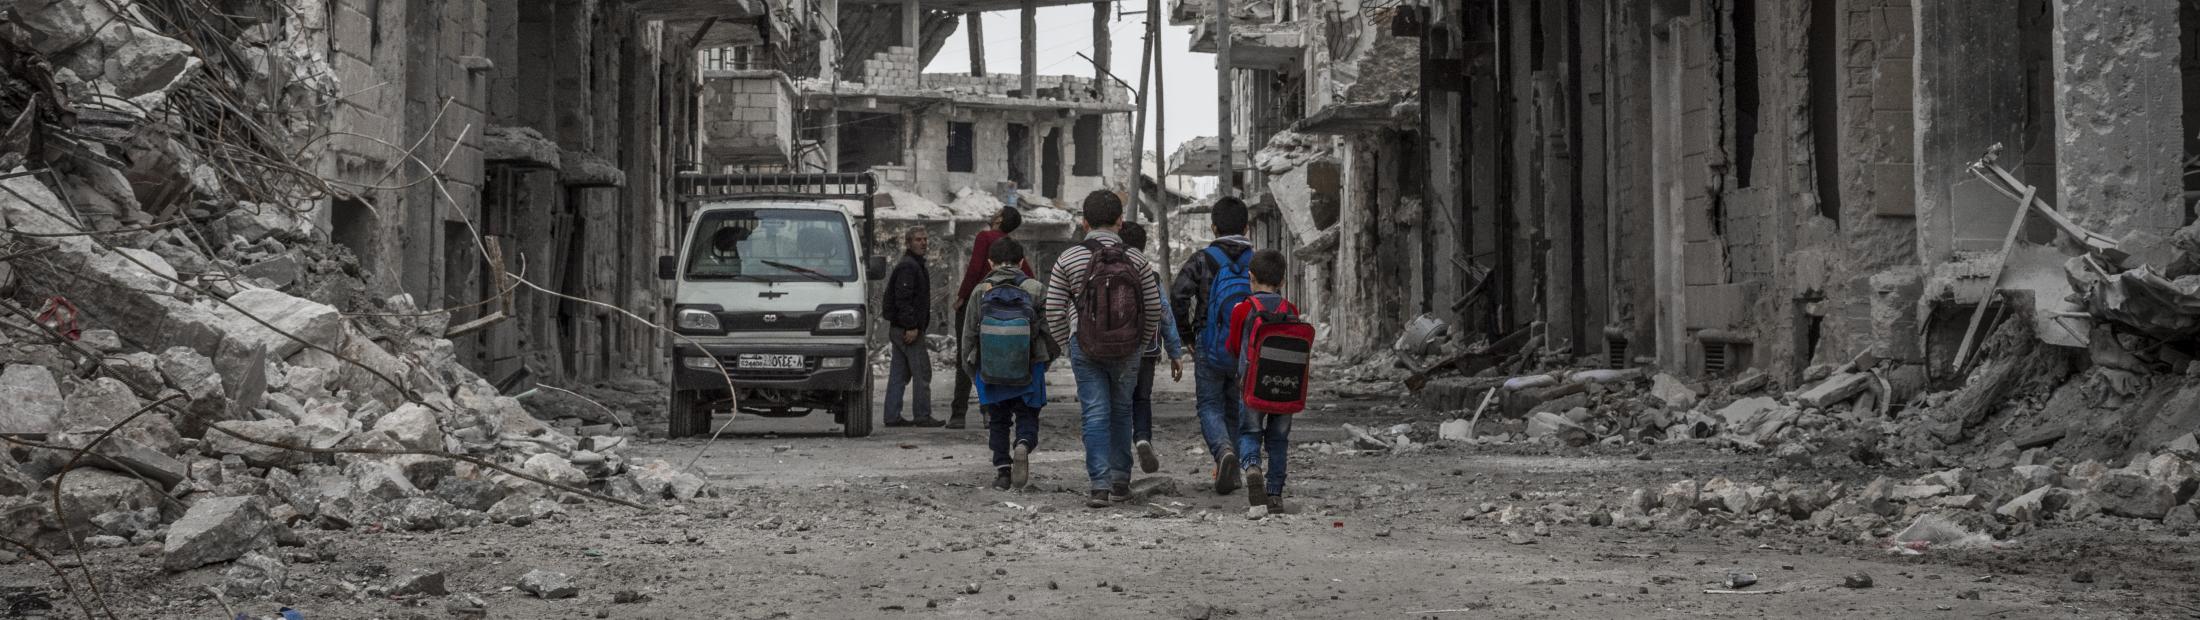 Síria: 12 anos de crise